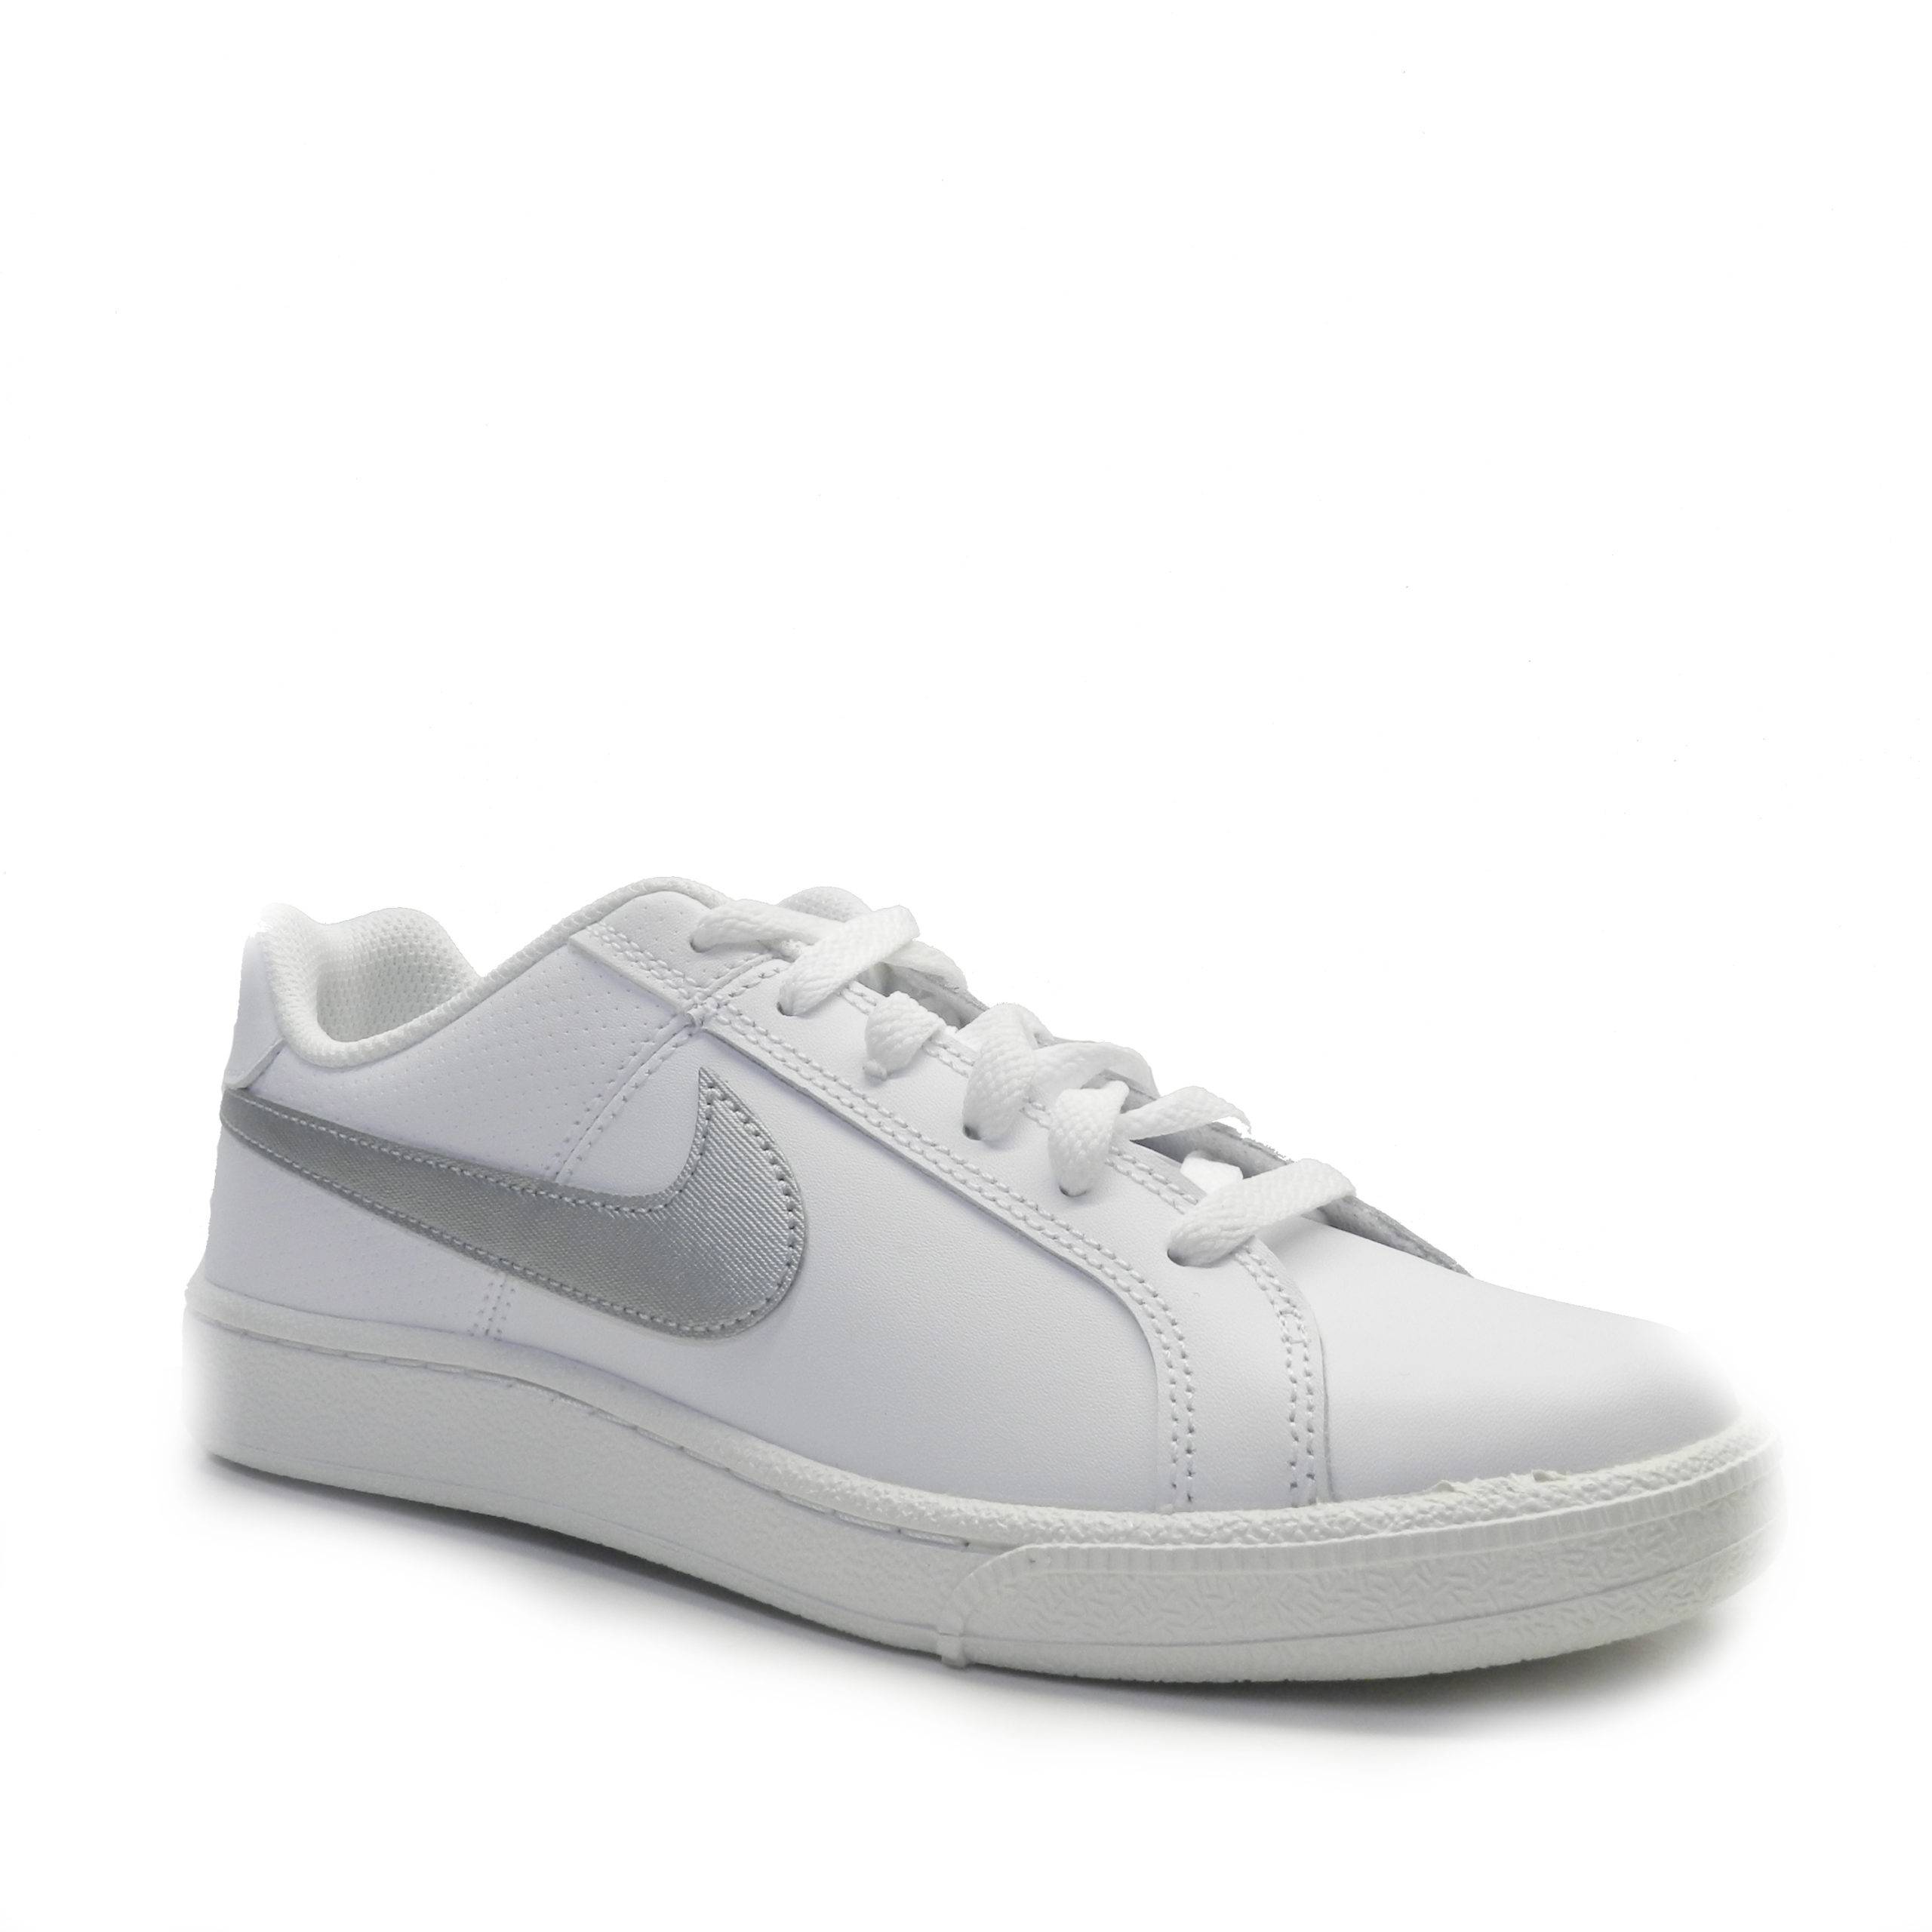 sneakers tipo tenis toda blanca con logo de color plata de la marca nike.